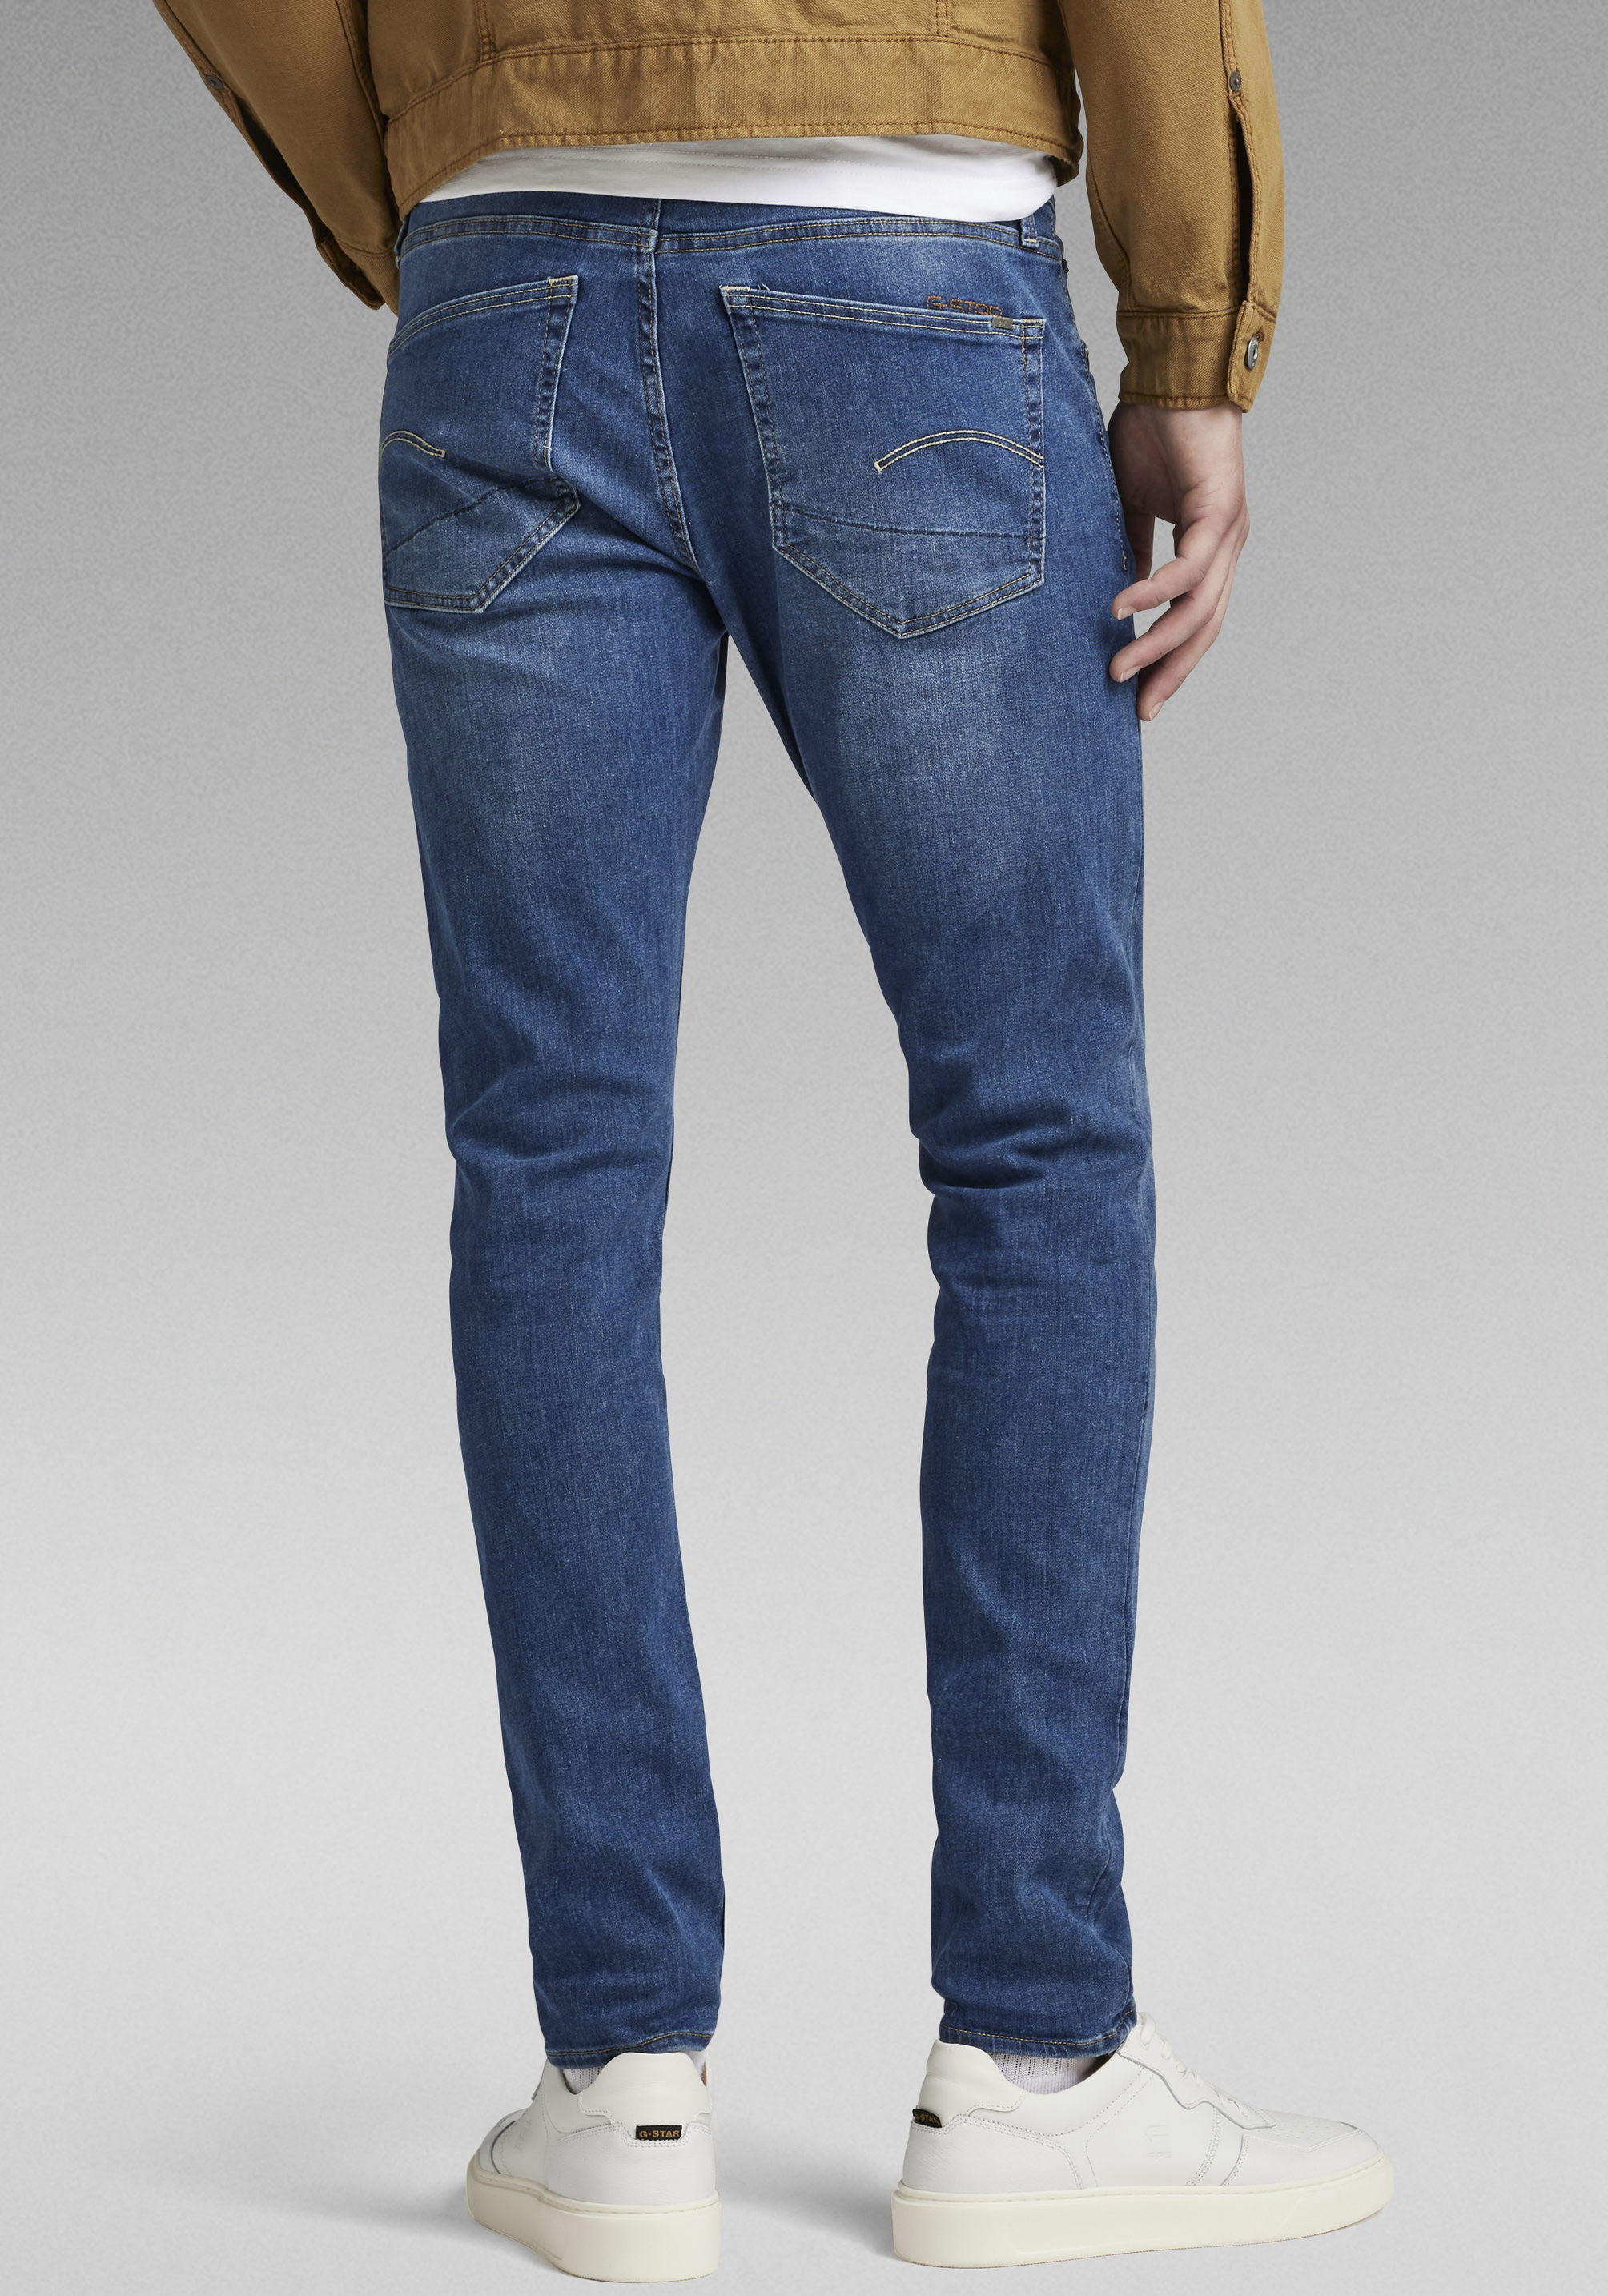 G-Star RAW Slim-fit-Jeans "3301 Slim", mit leichten Used-Effekten